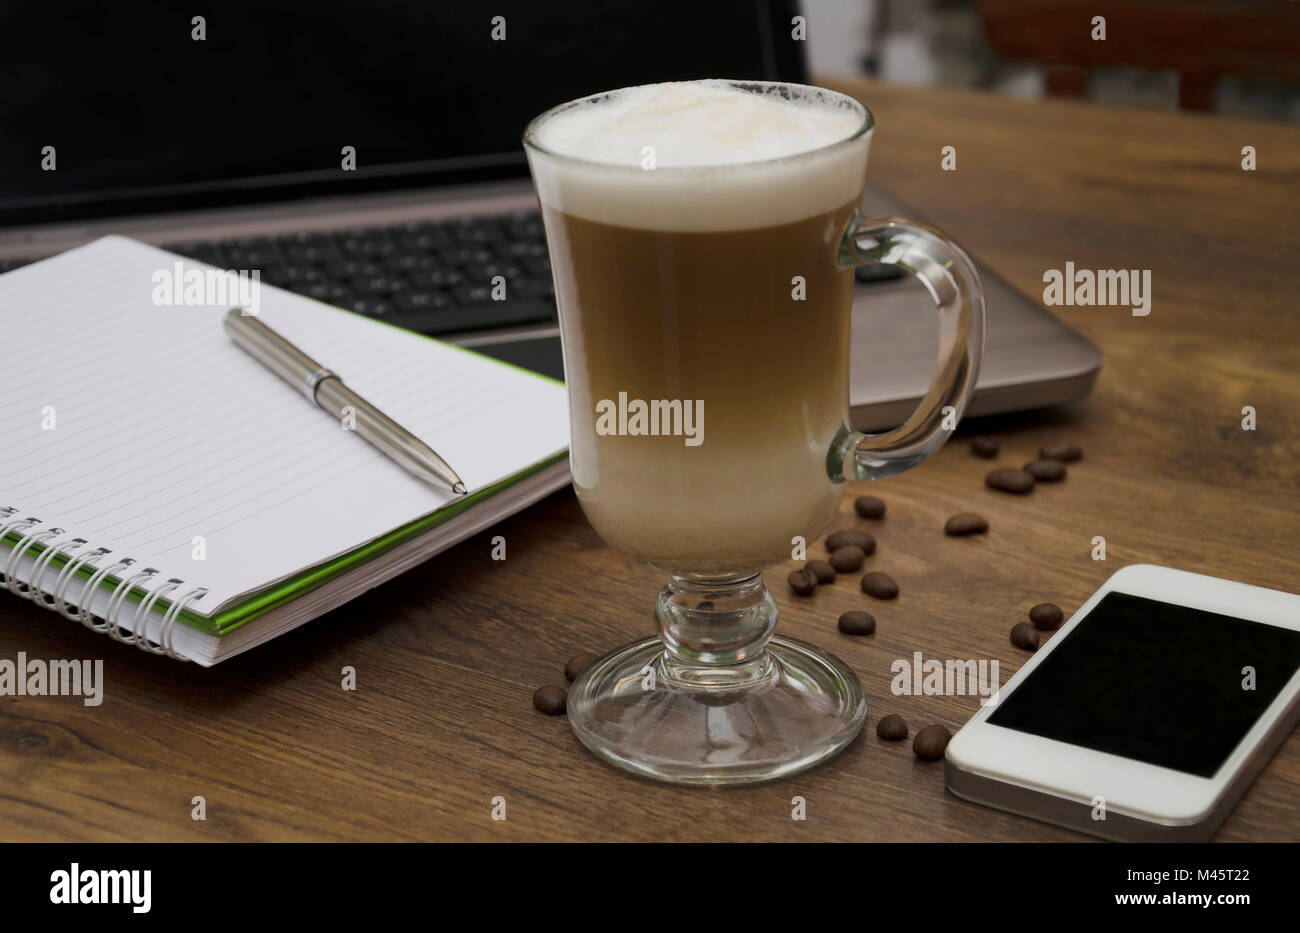 Bevanda calda con caffè e latte, latte, cappuccino, in un bel bicchiere di vetro, telefono, blocco note per appunti e una penna sullo sfondo del computer Foto Stock